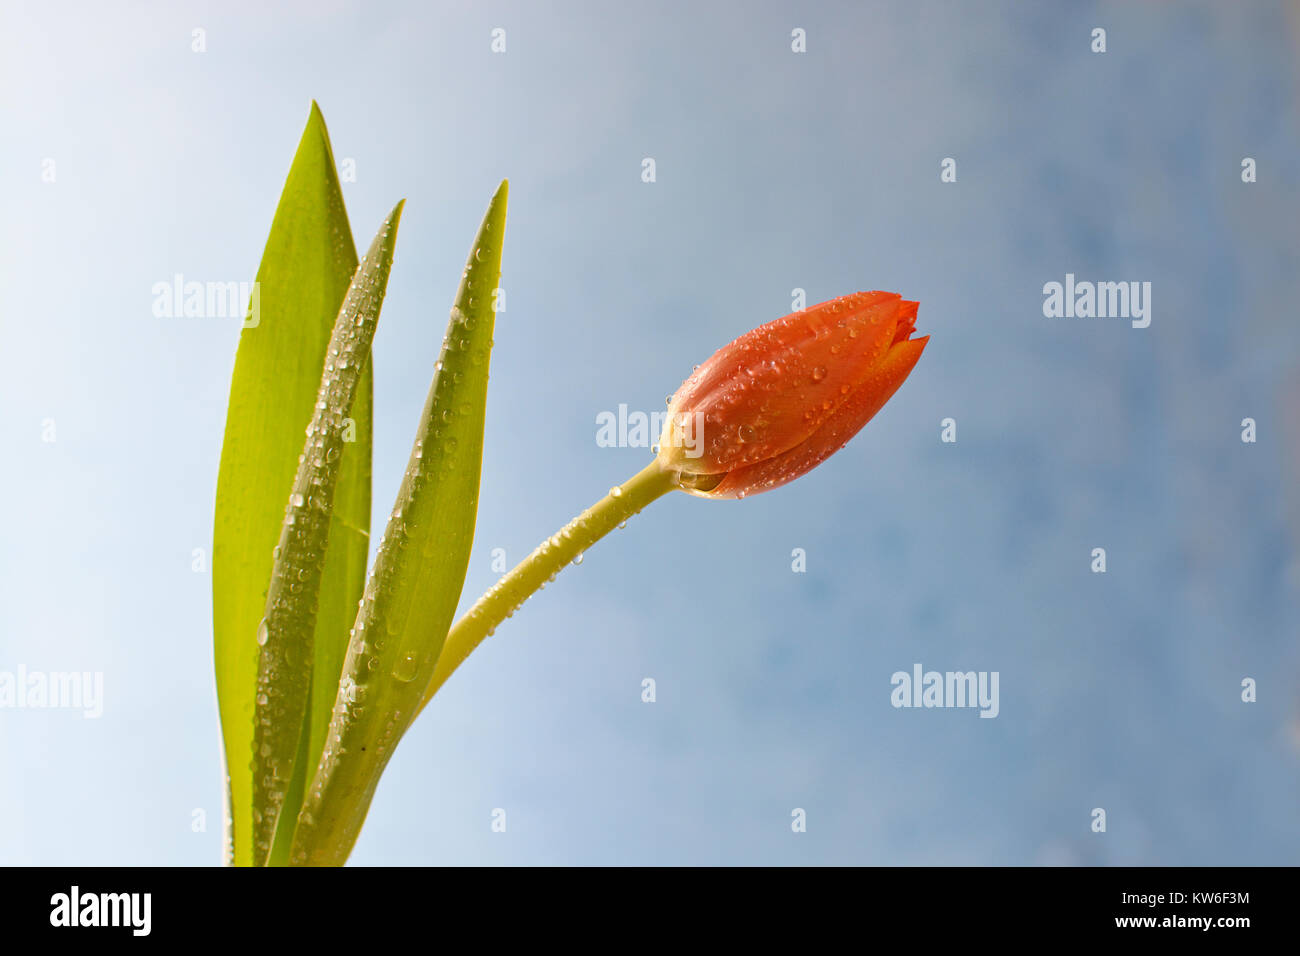 Semplice, fotografia artistica di una Orange Tulip poste con garbo contro un moderno sfondo blu. Foto Stock